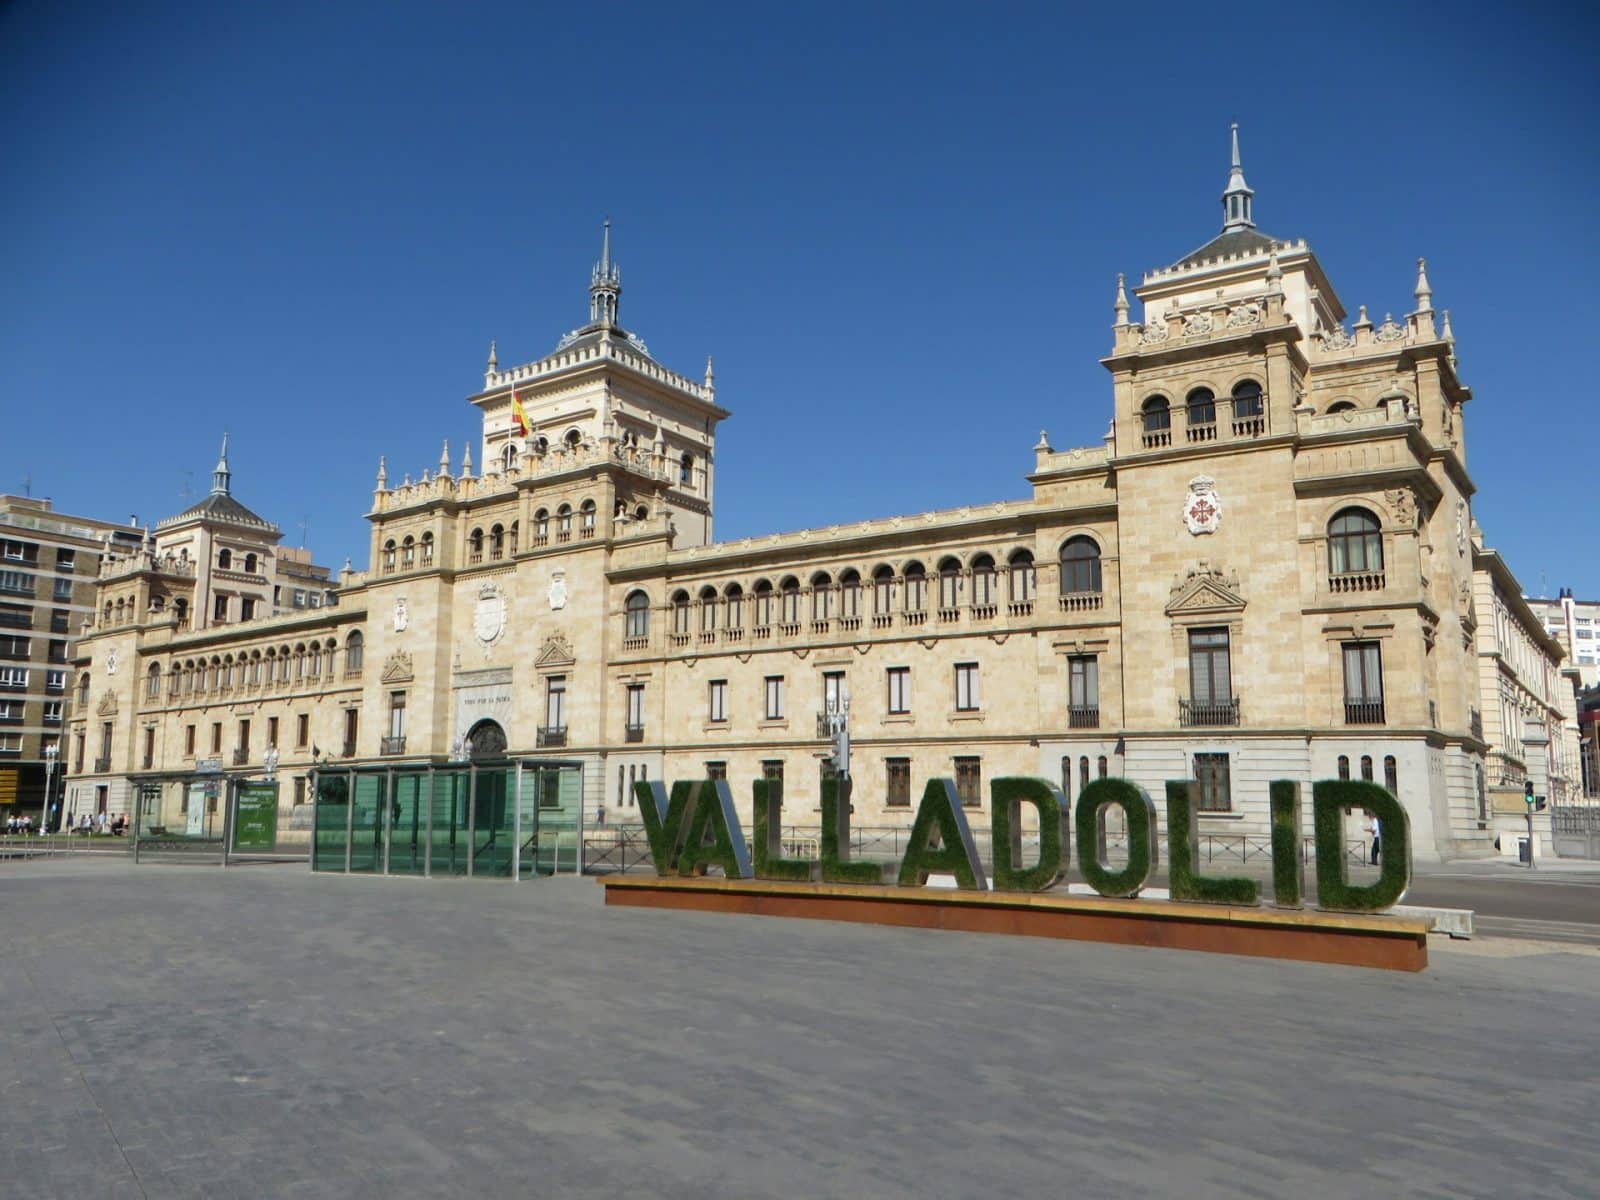 Dónde dormir en Valladolid: Mejores zonas y hoteles